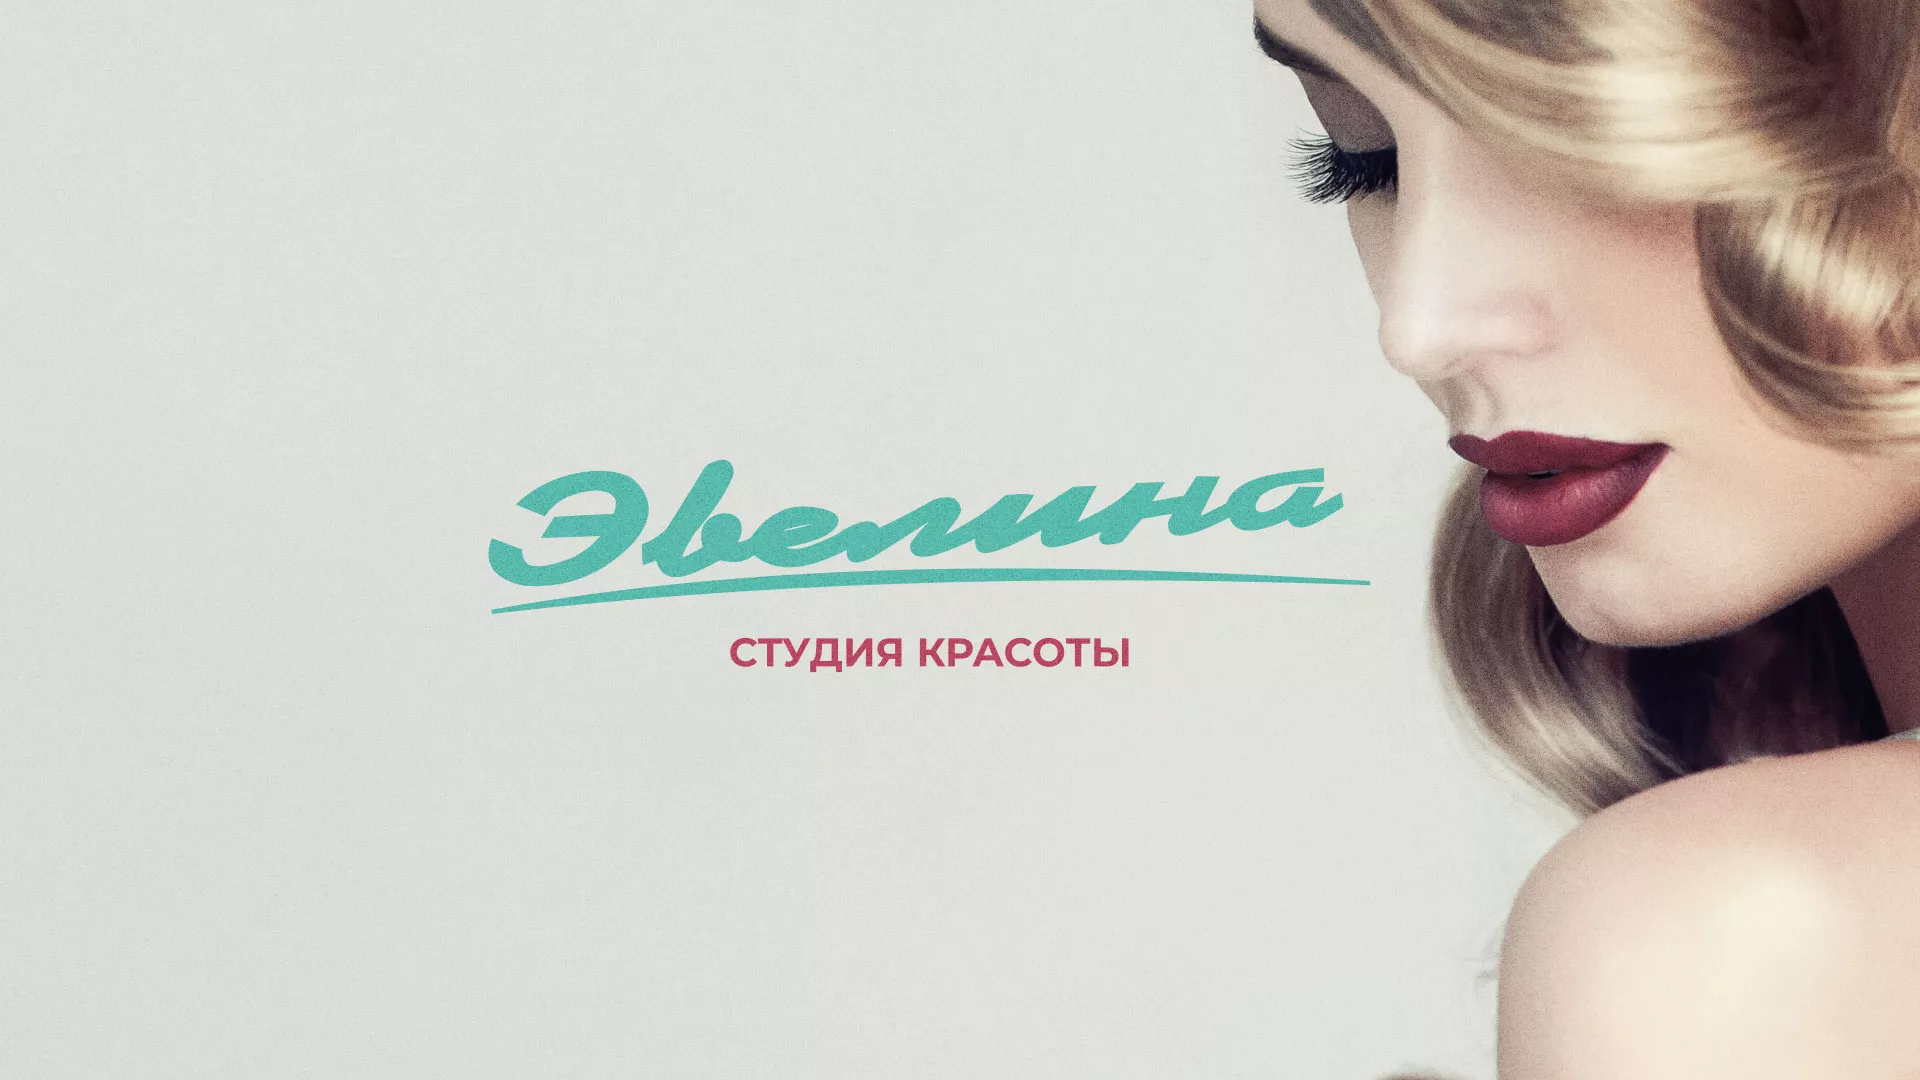 Разработка сайта для салона красоты «Эвелина» в Москве